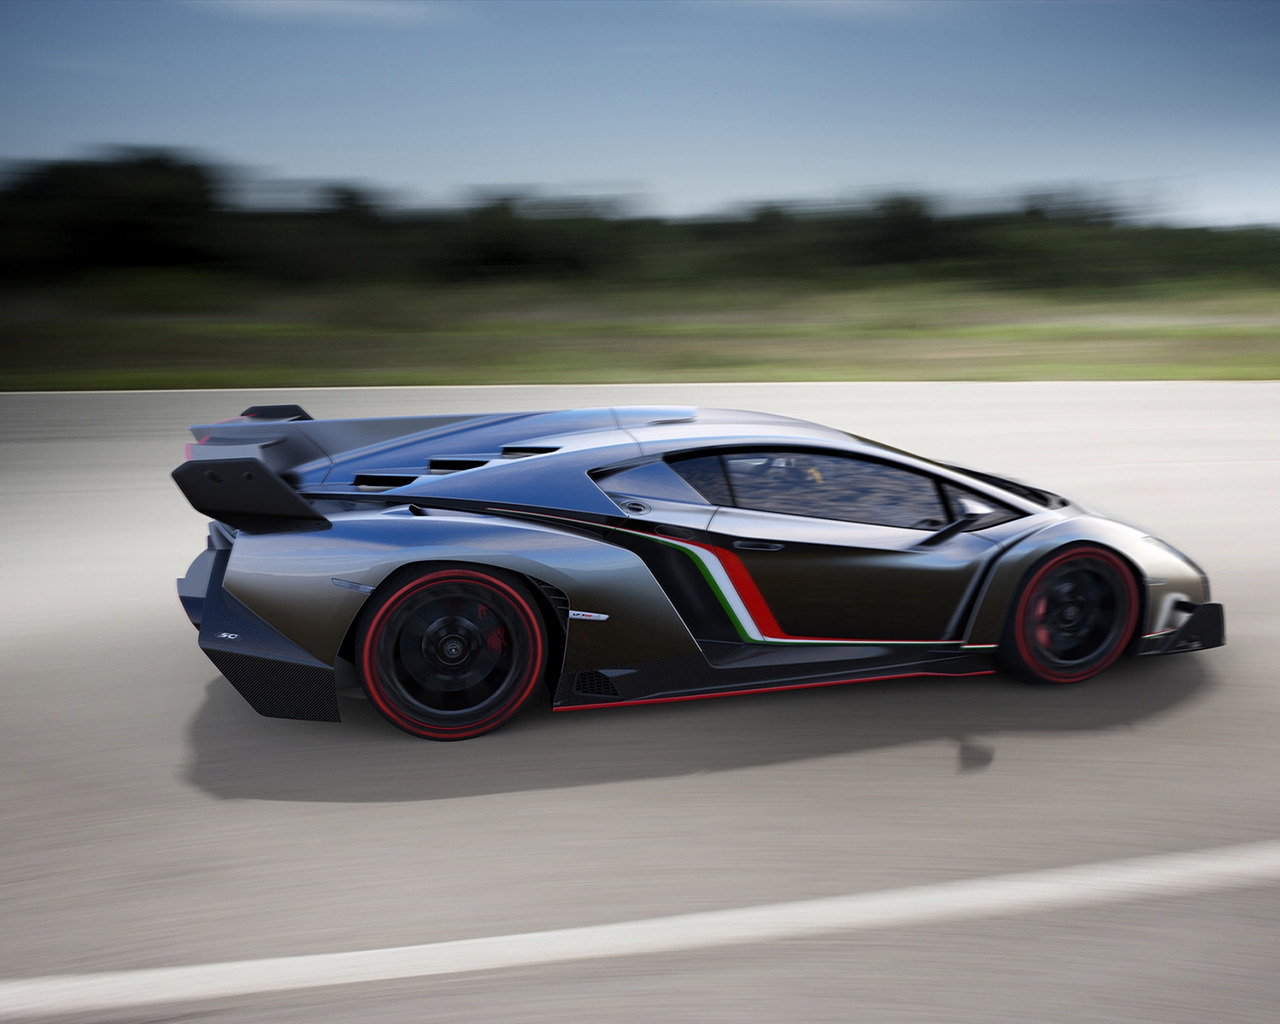 Lamborghini Veneno Speed for 1280 x 1024 resolution